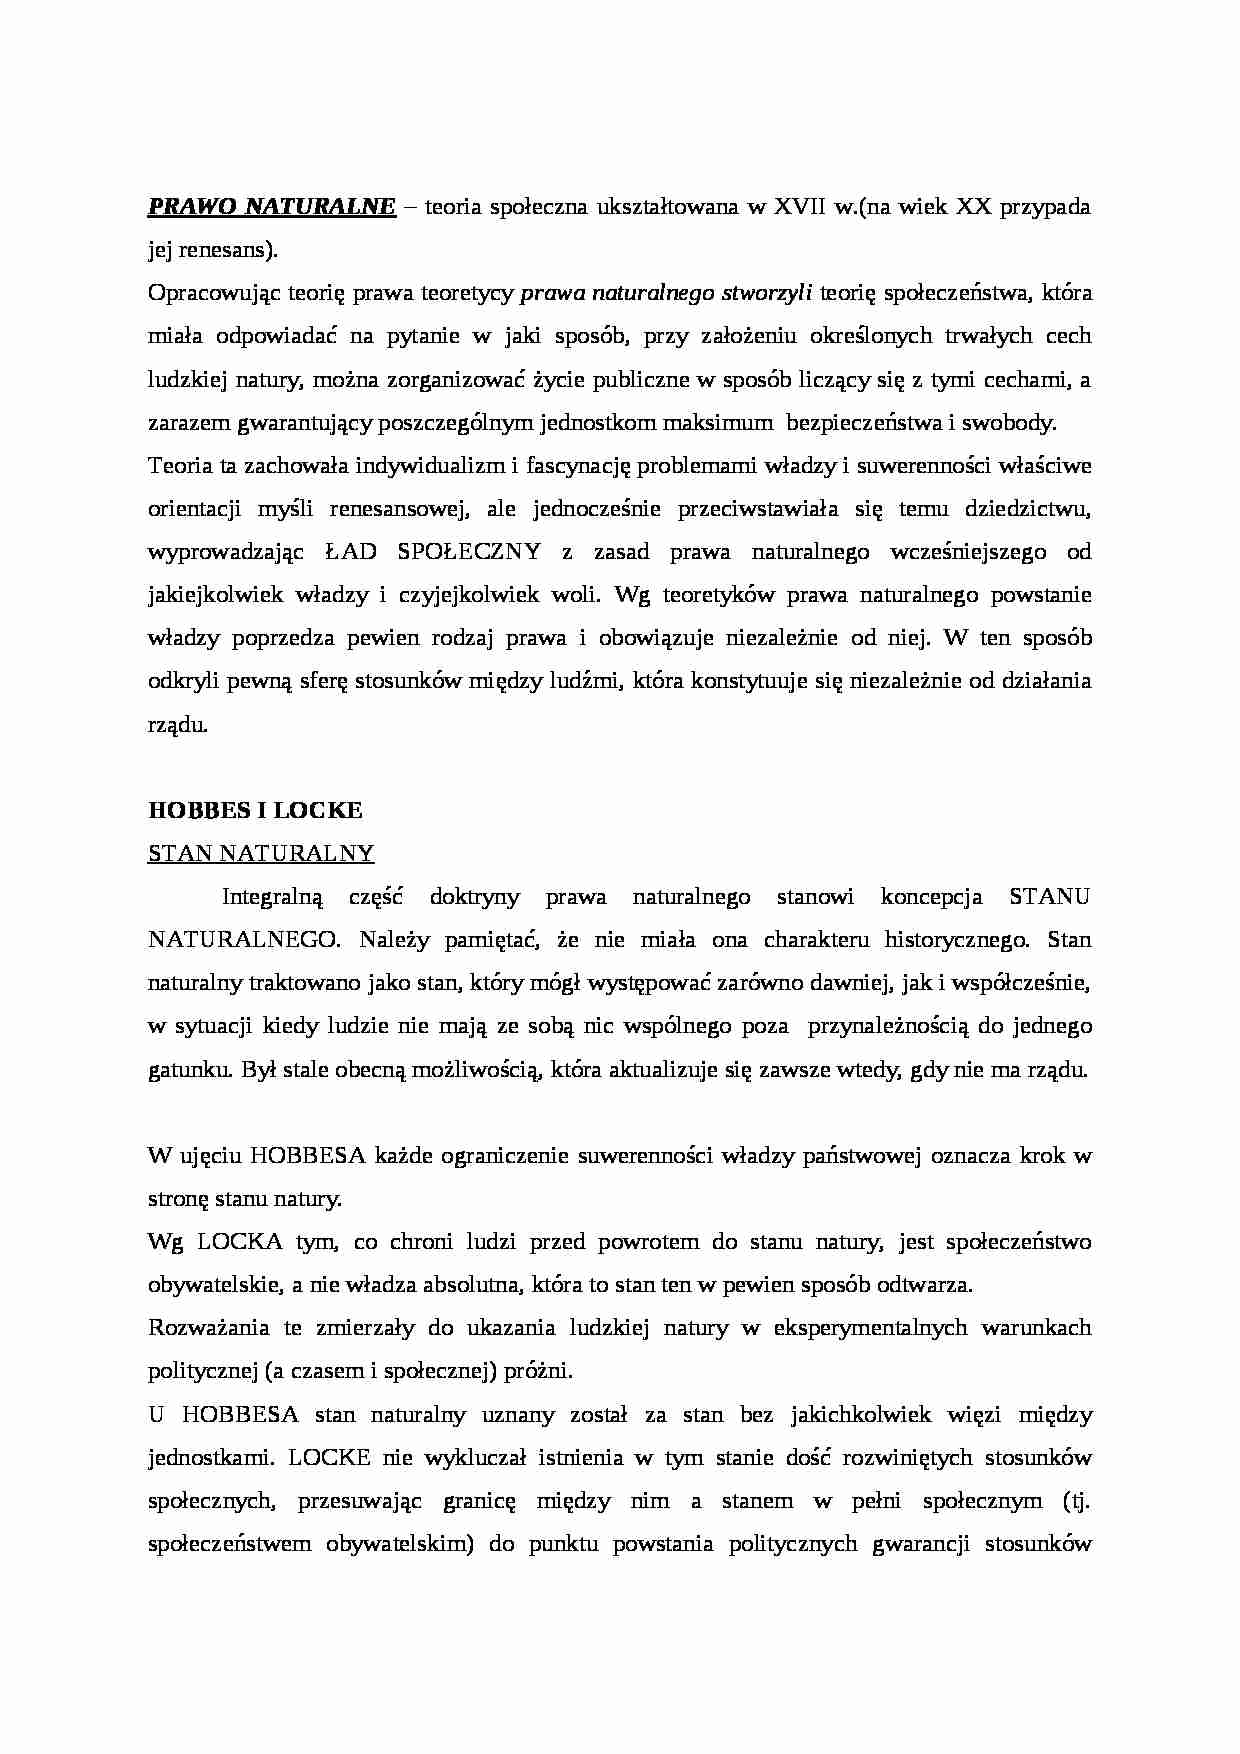 Dynamika społeczeństwa polskiego - ćwiczenia i wykłady - strona 1